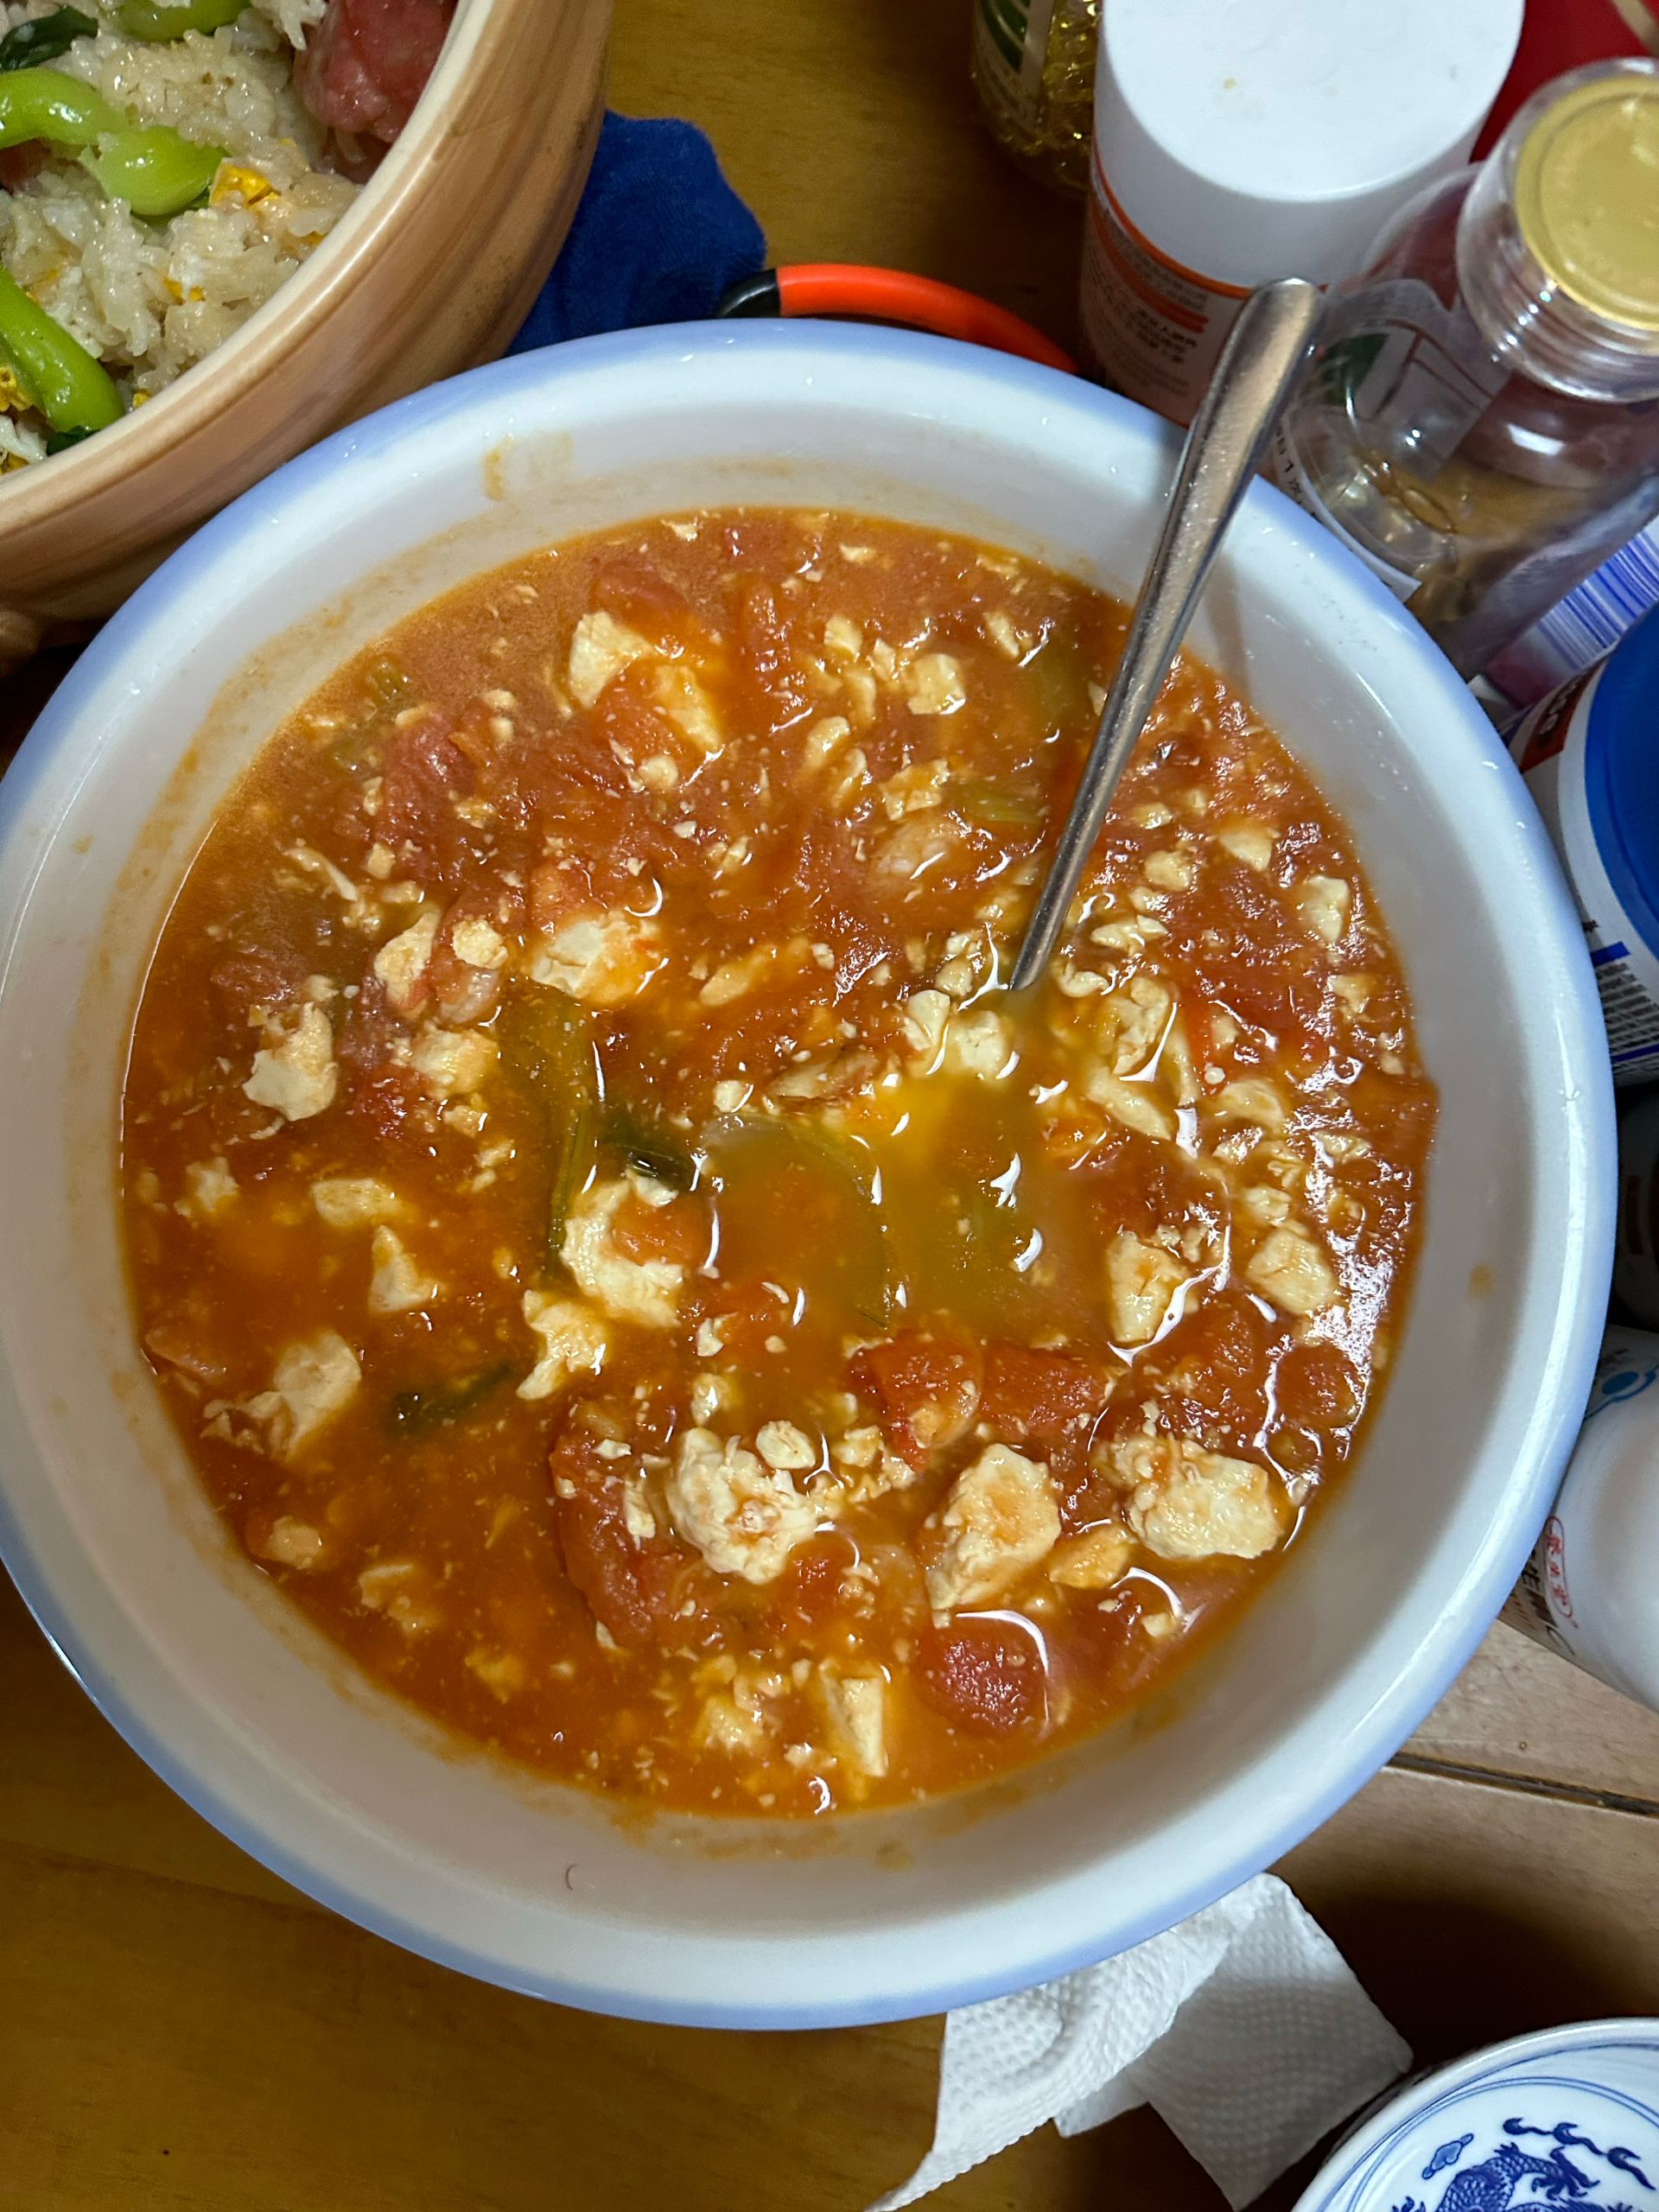 冬日里的一碗暖汤，番茄豆腐浓汤，不加一滴水，汤汁浓郁豆腐软嫩暖心又暖胃。